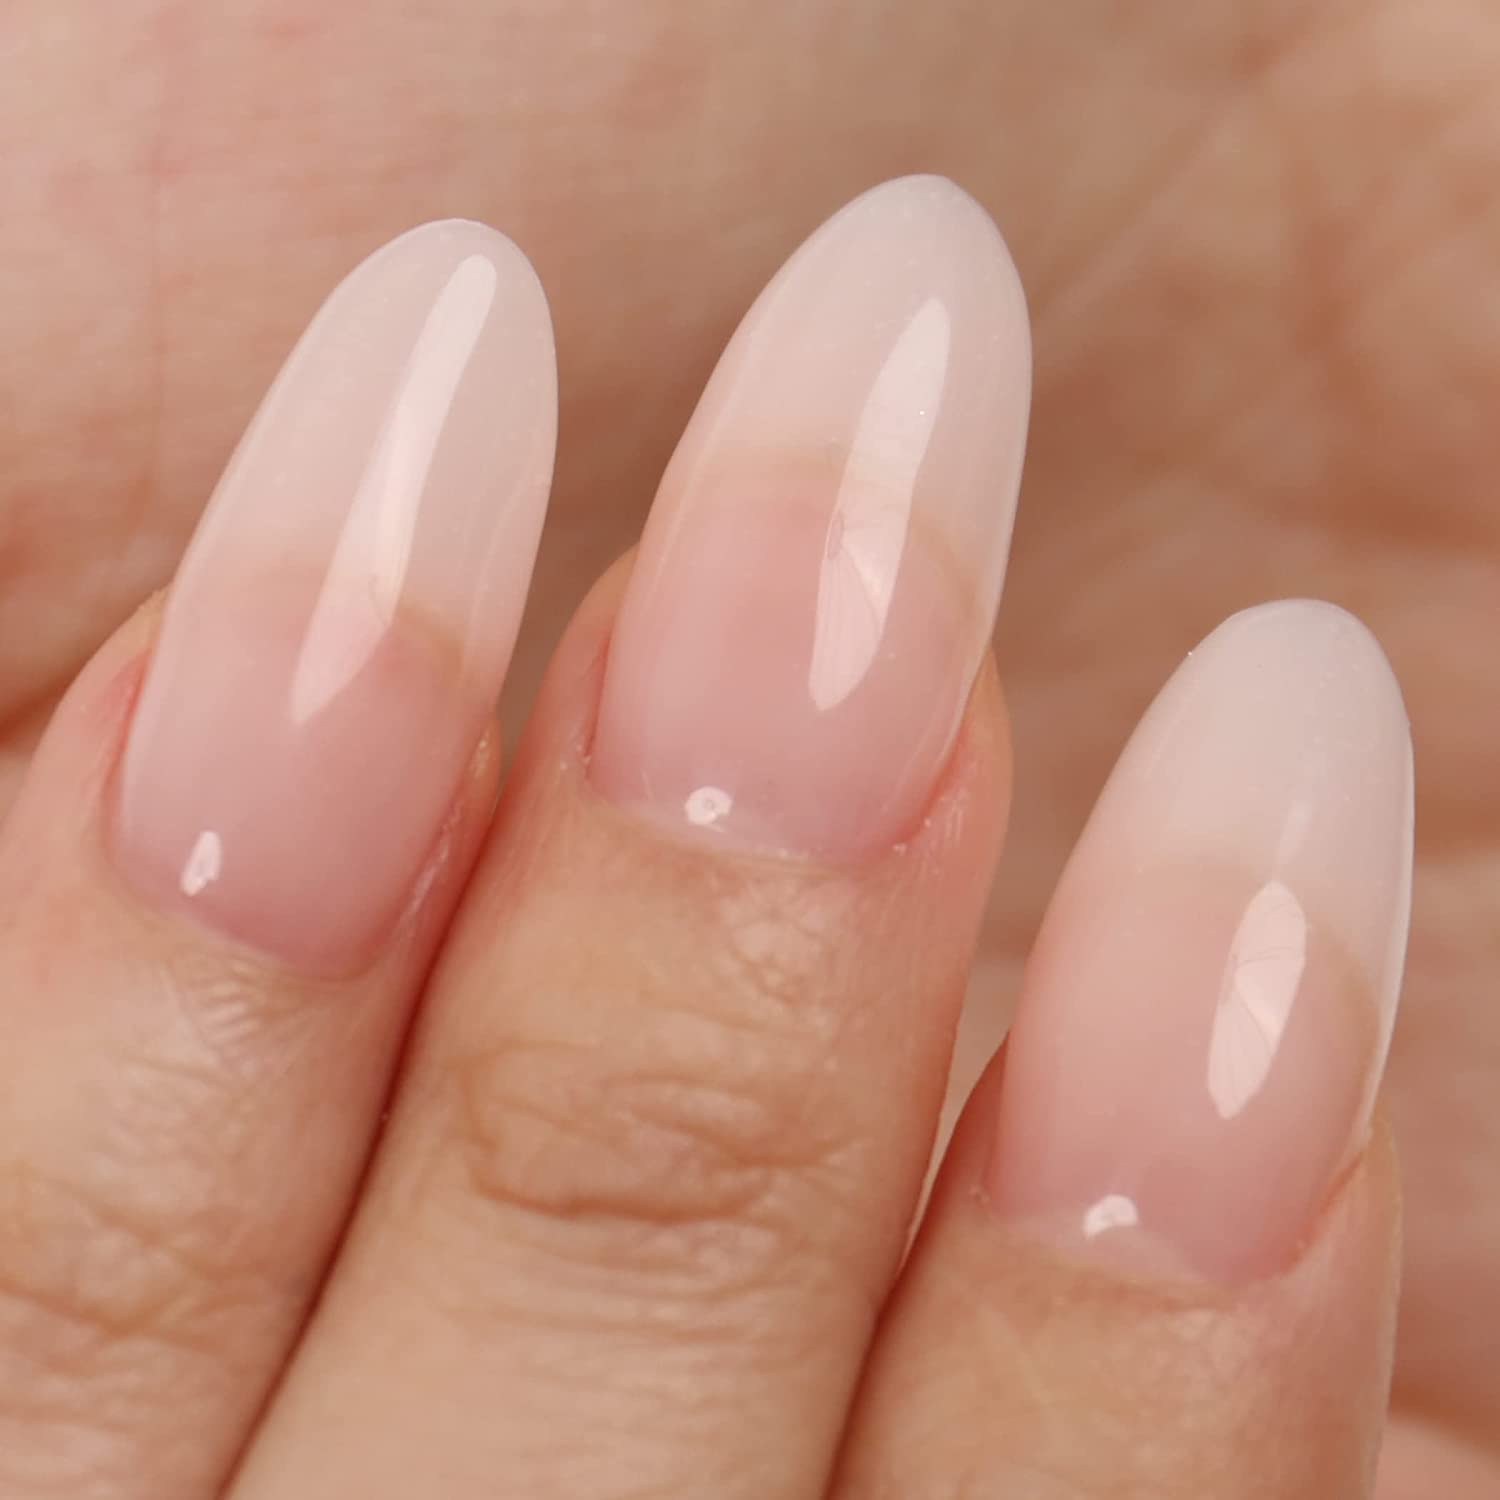 BABYGIRL Pink Nails Press on Nails-luxury Nails-gel Nail Extensions-gel  Nails-long Short Nails-glue on Nails-nail Art - Etsy